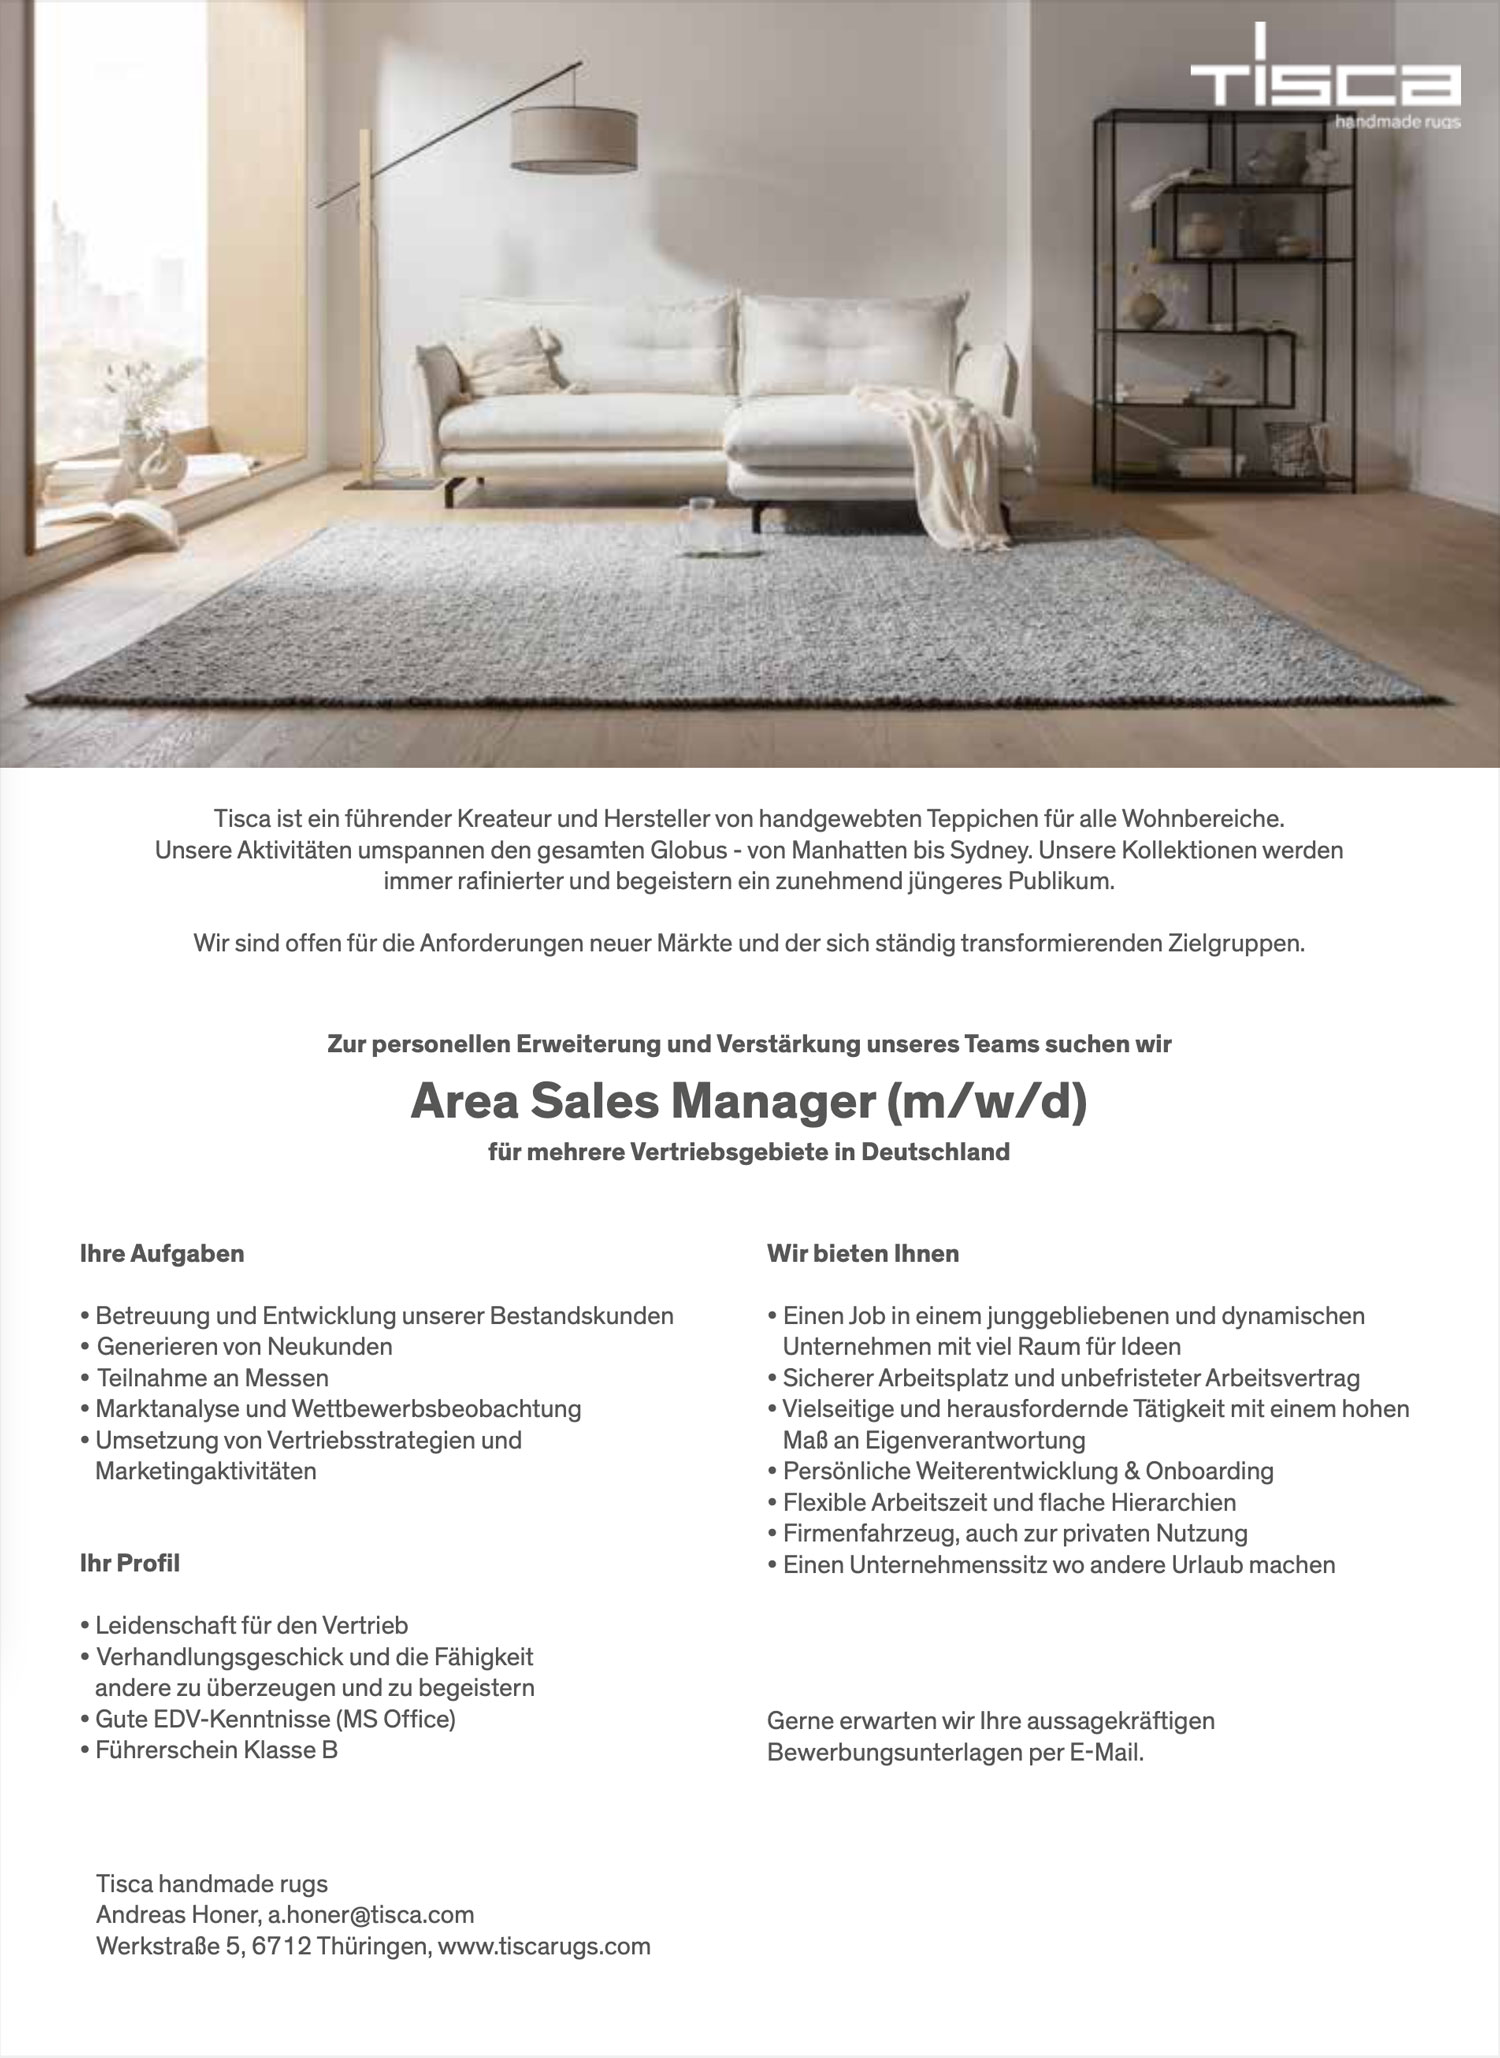 Area Sales Manager (m/w/d) für Teppiche